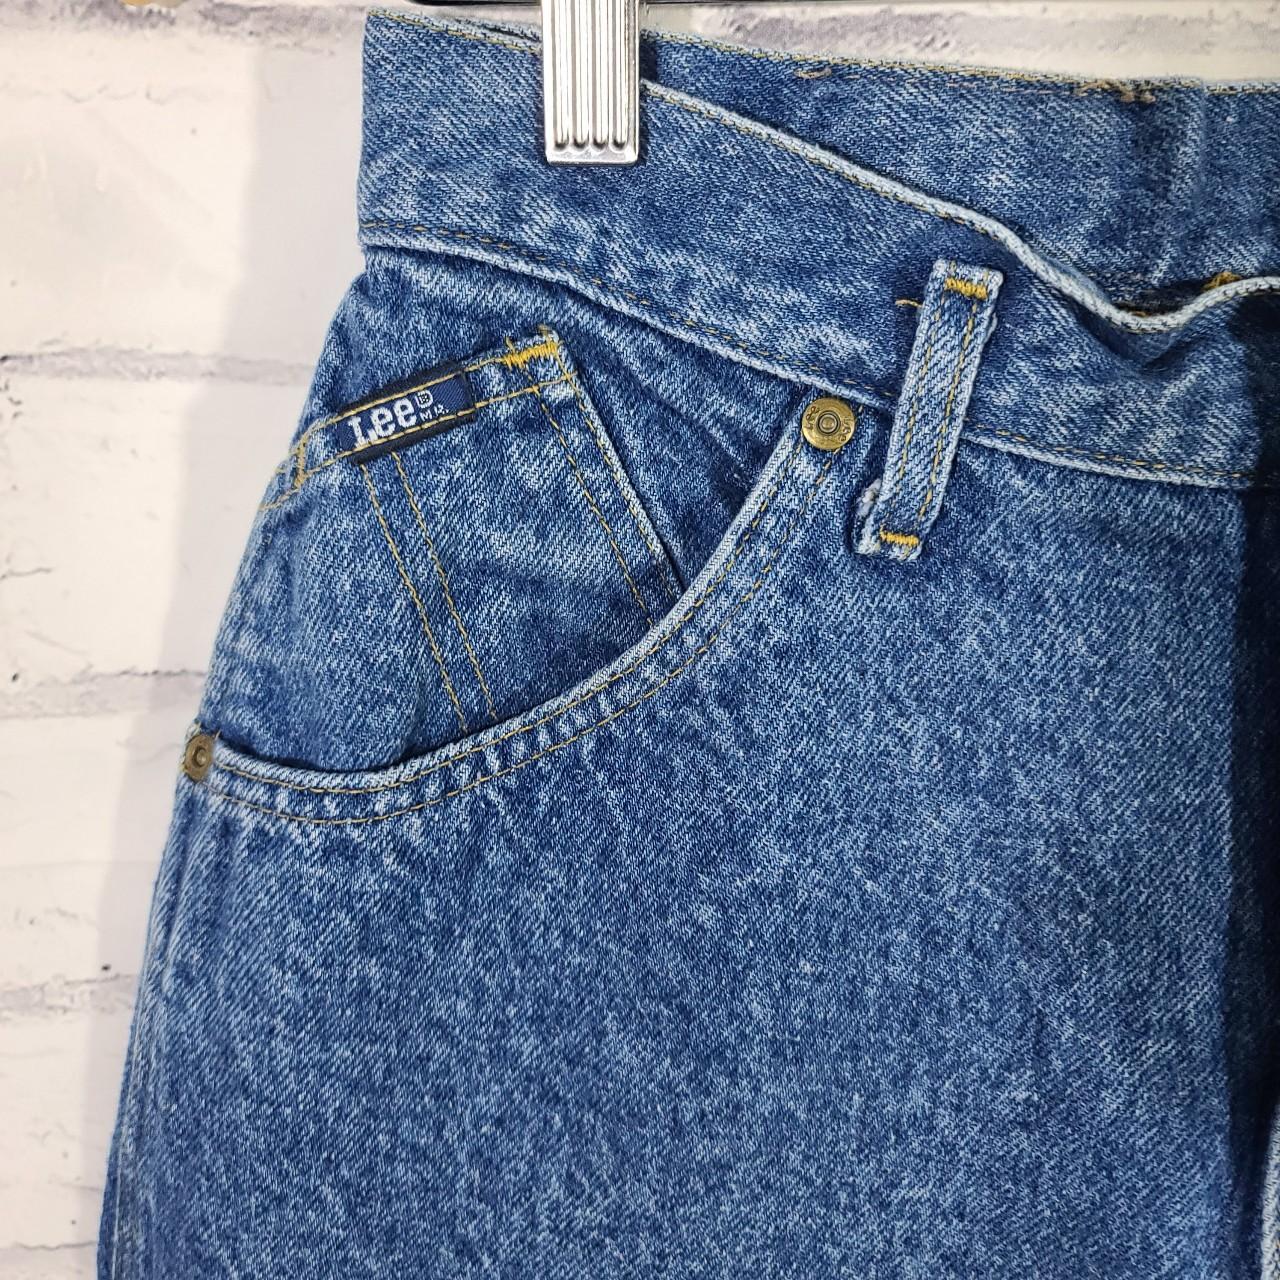 Vintage Women's High Rise Mom Lee Jeans, Flawed, As... - Depop